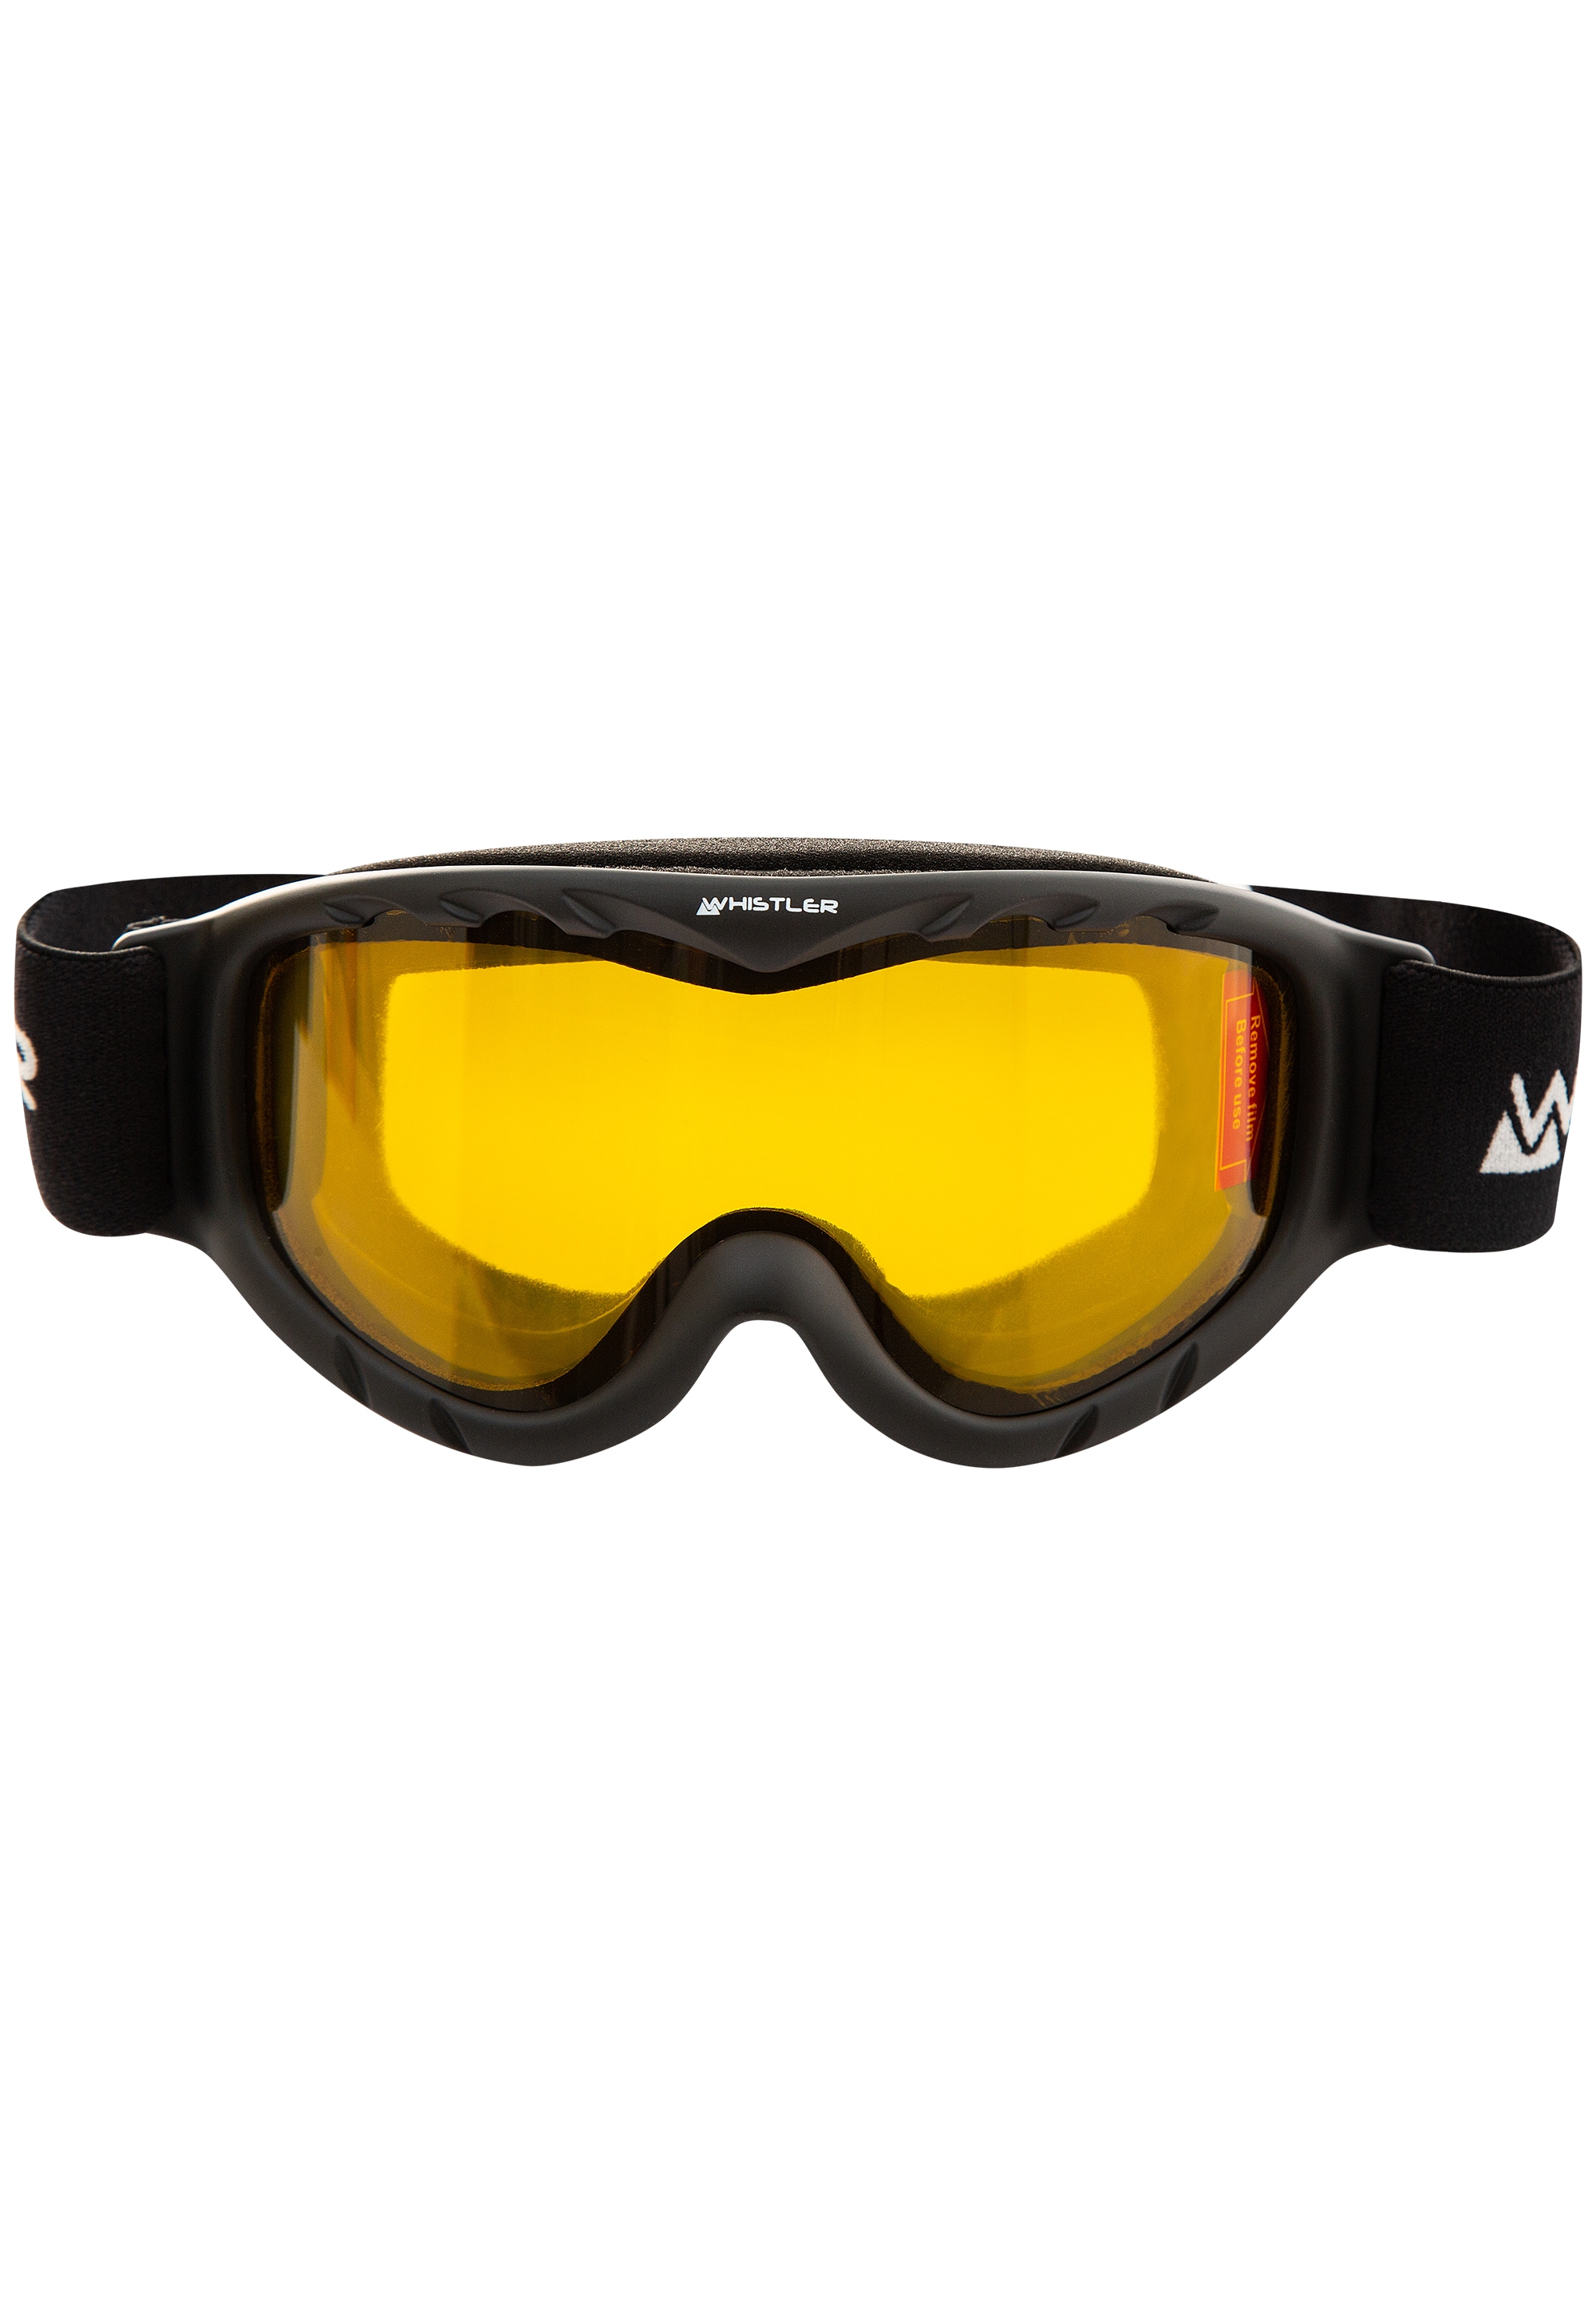 WHISTLER Skibrille »WS300 Jr. Ski Goggle«, mit Anti-Fog-Beschichtung